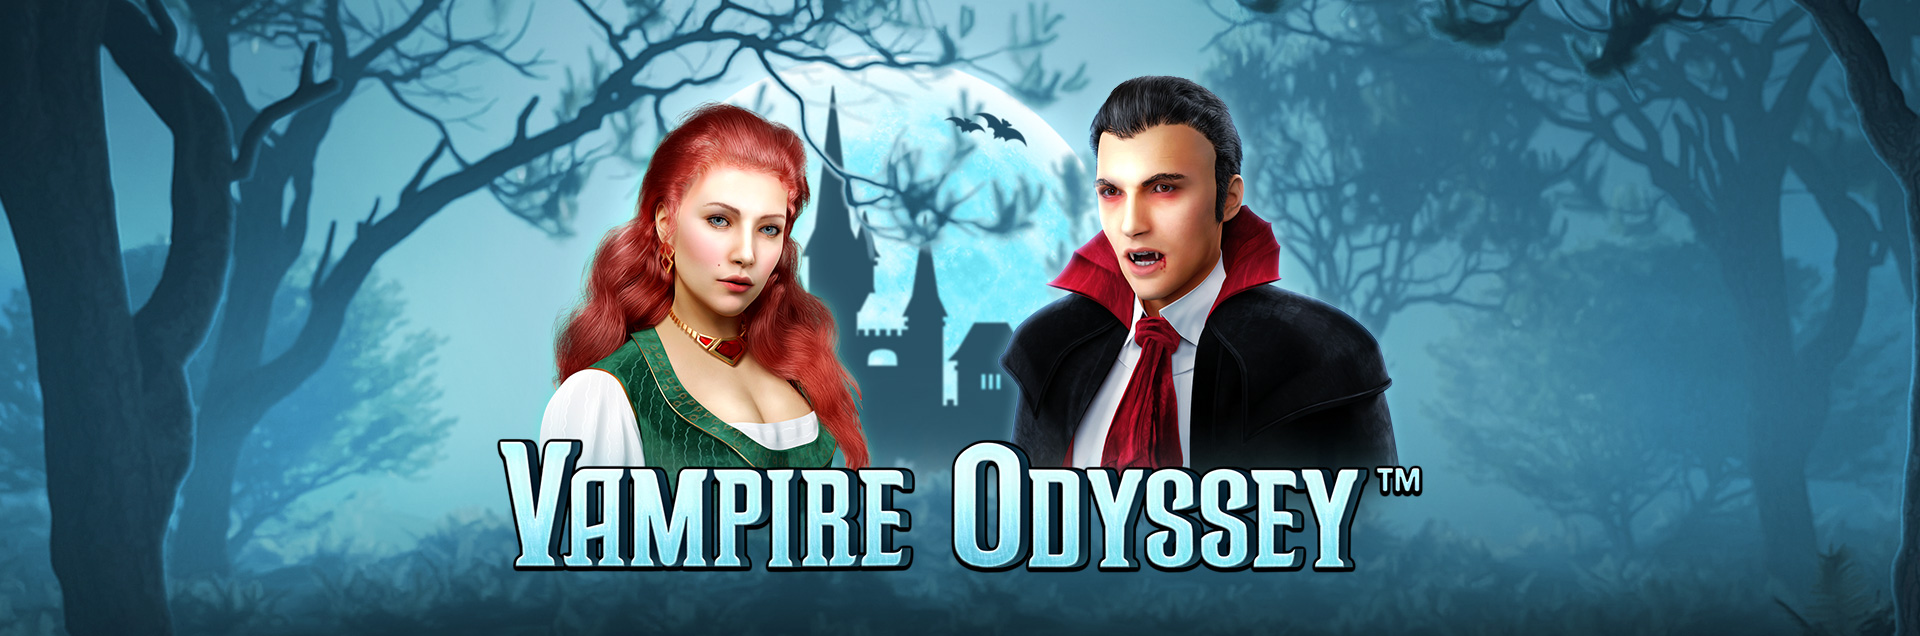 Vampire Odyssey header games